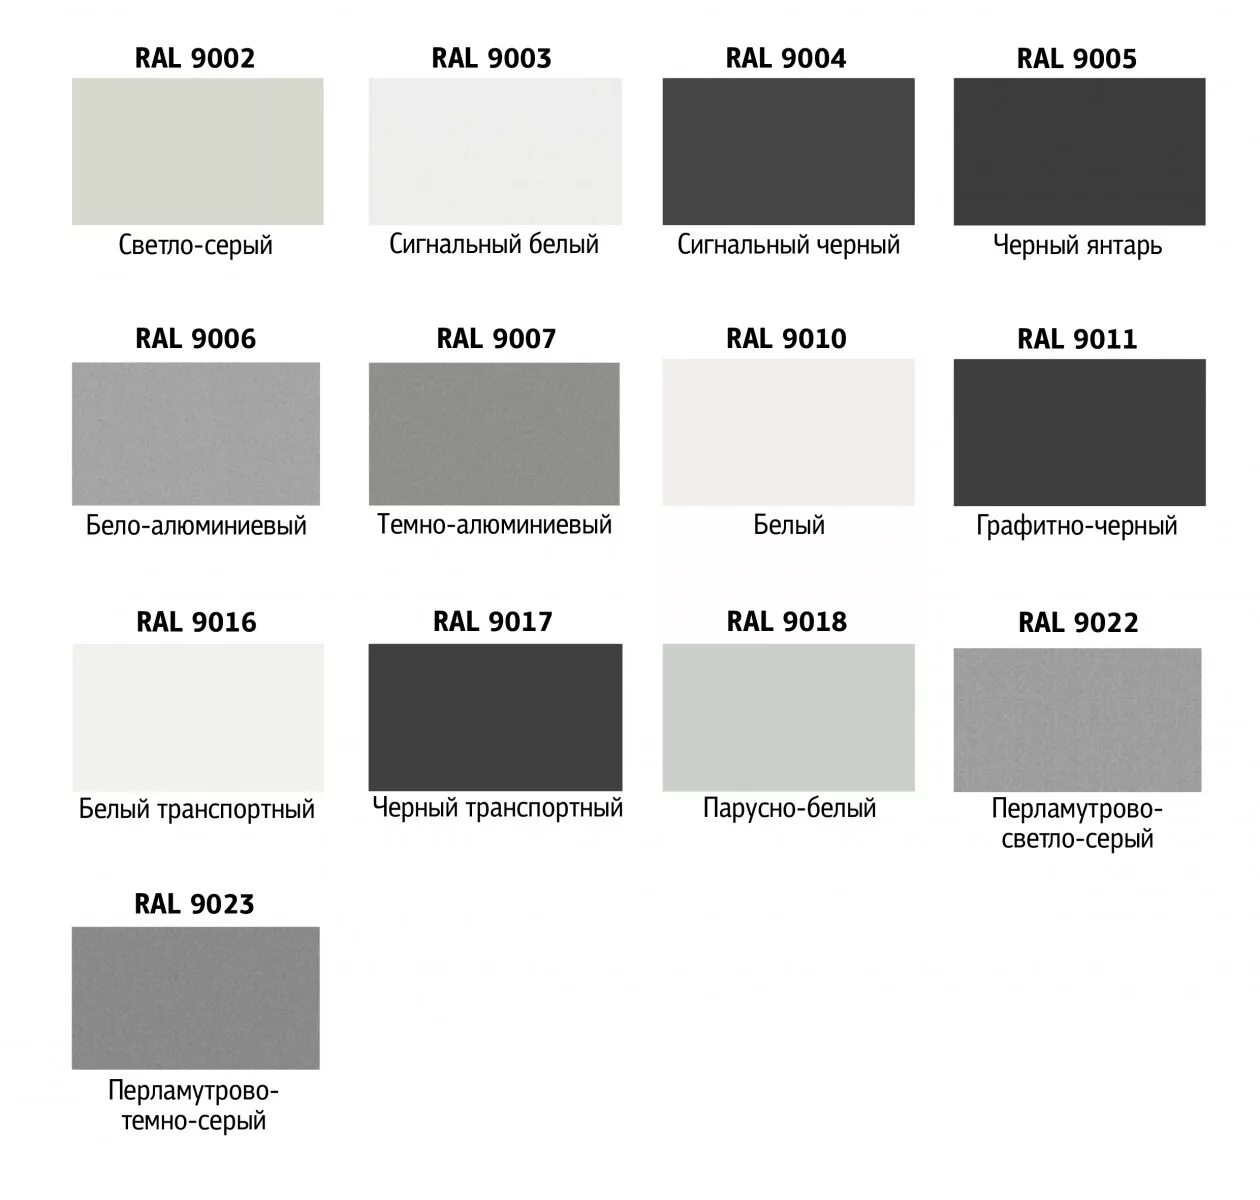 Стандартный серый. Рал 9020. Таблица RAL 7024 серый графит. Kia Sorento цвет 9010 белый RAL. Светло серый цвет по рал 9003.